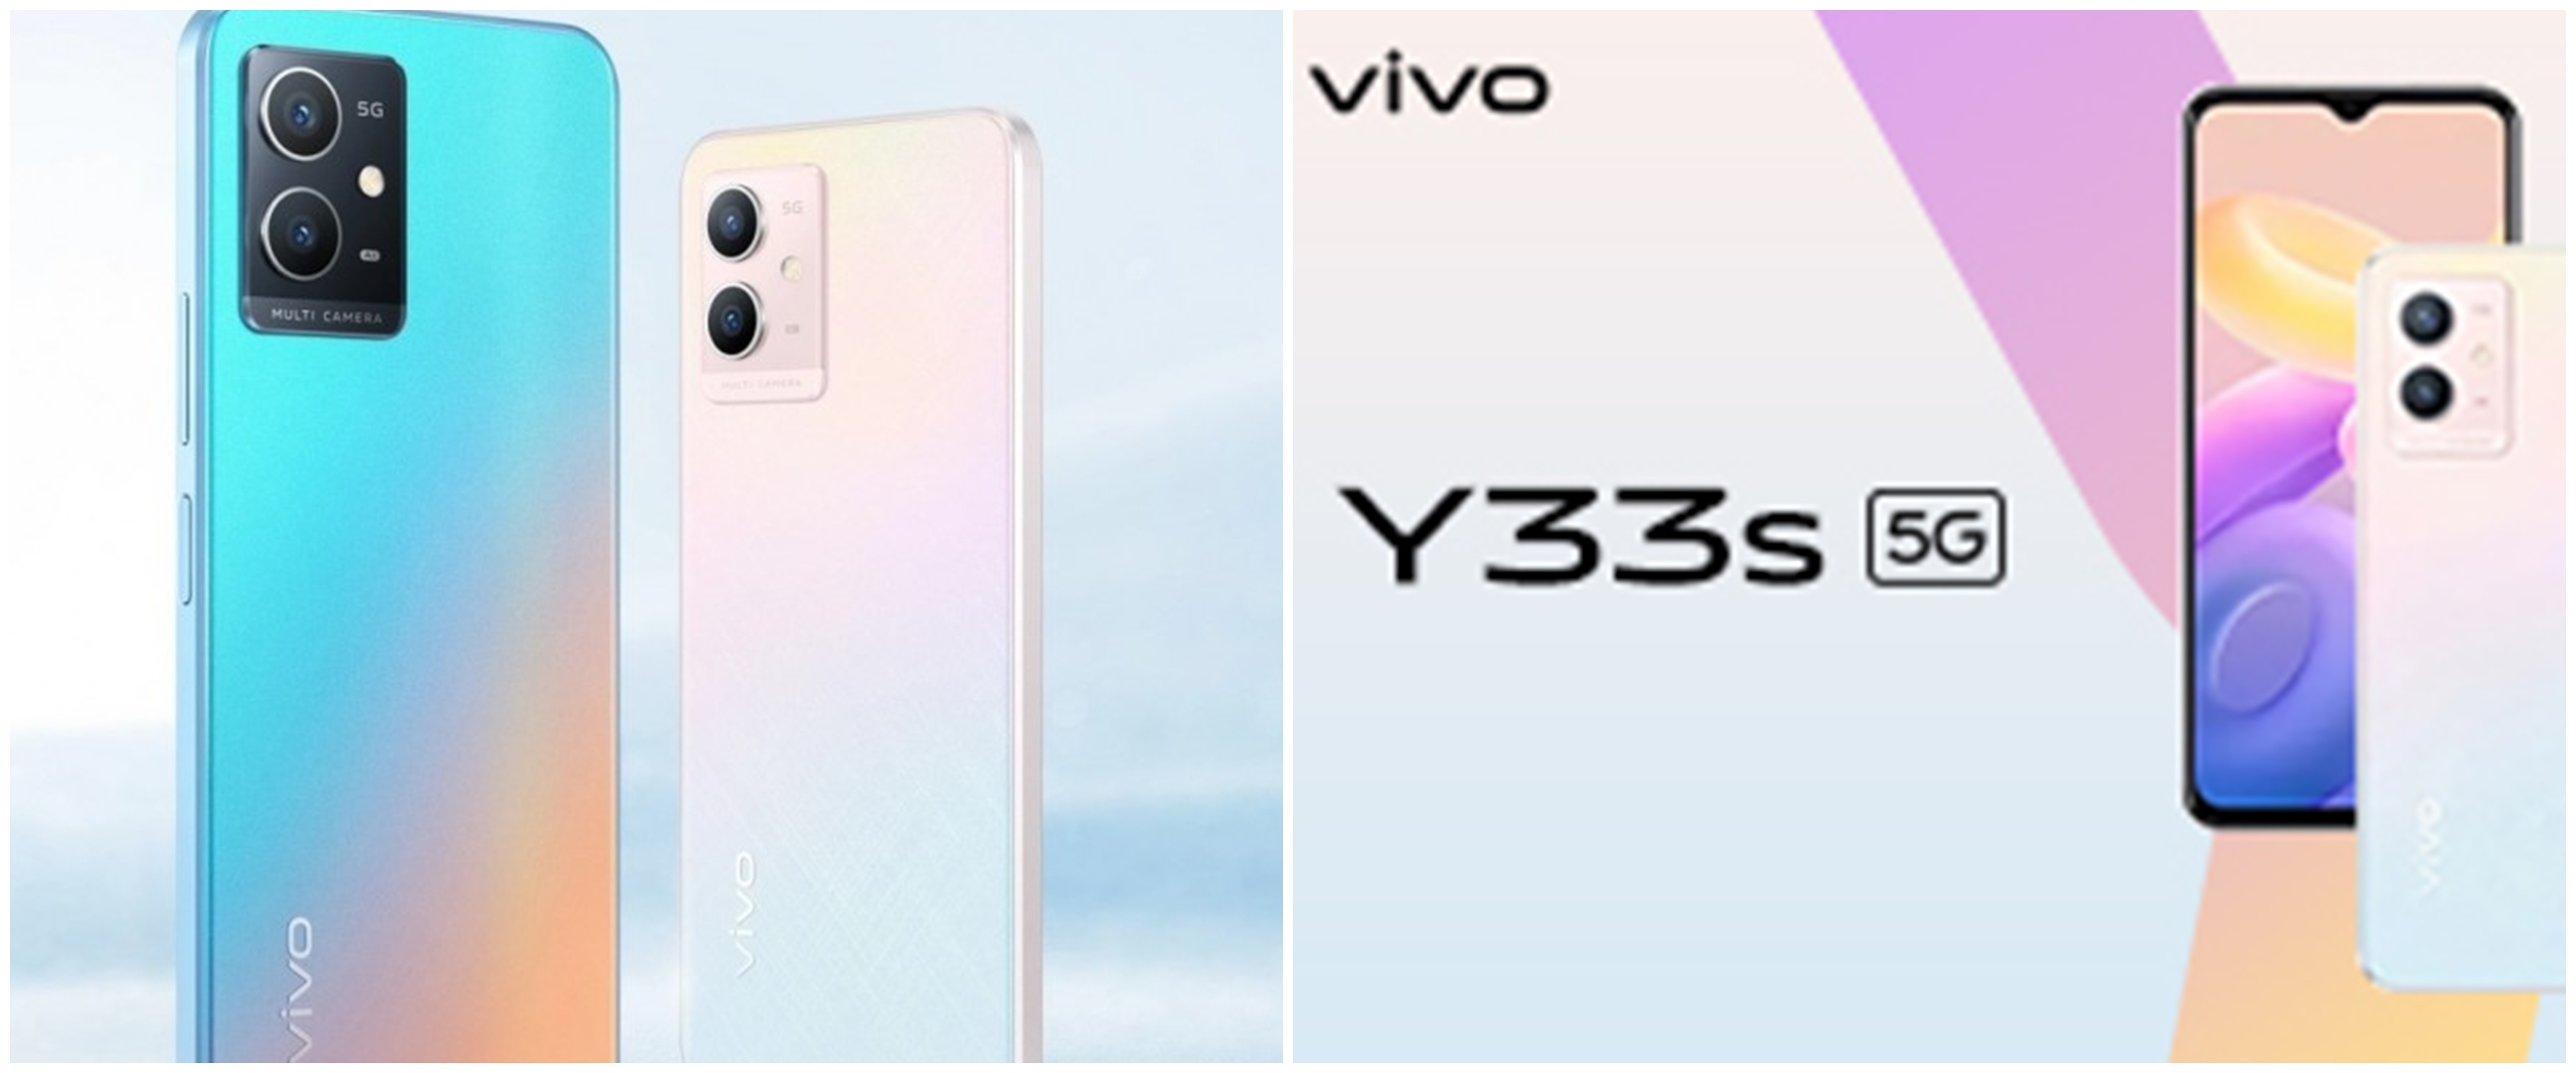 Ini harga dan spesifikasi Vivo Y33s 5G yang baru saja dirilis